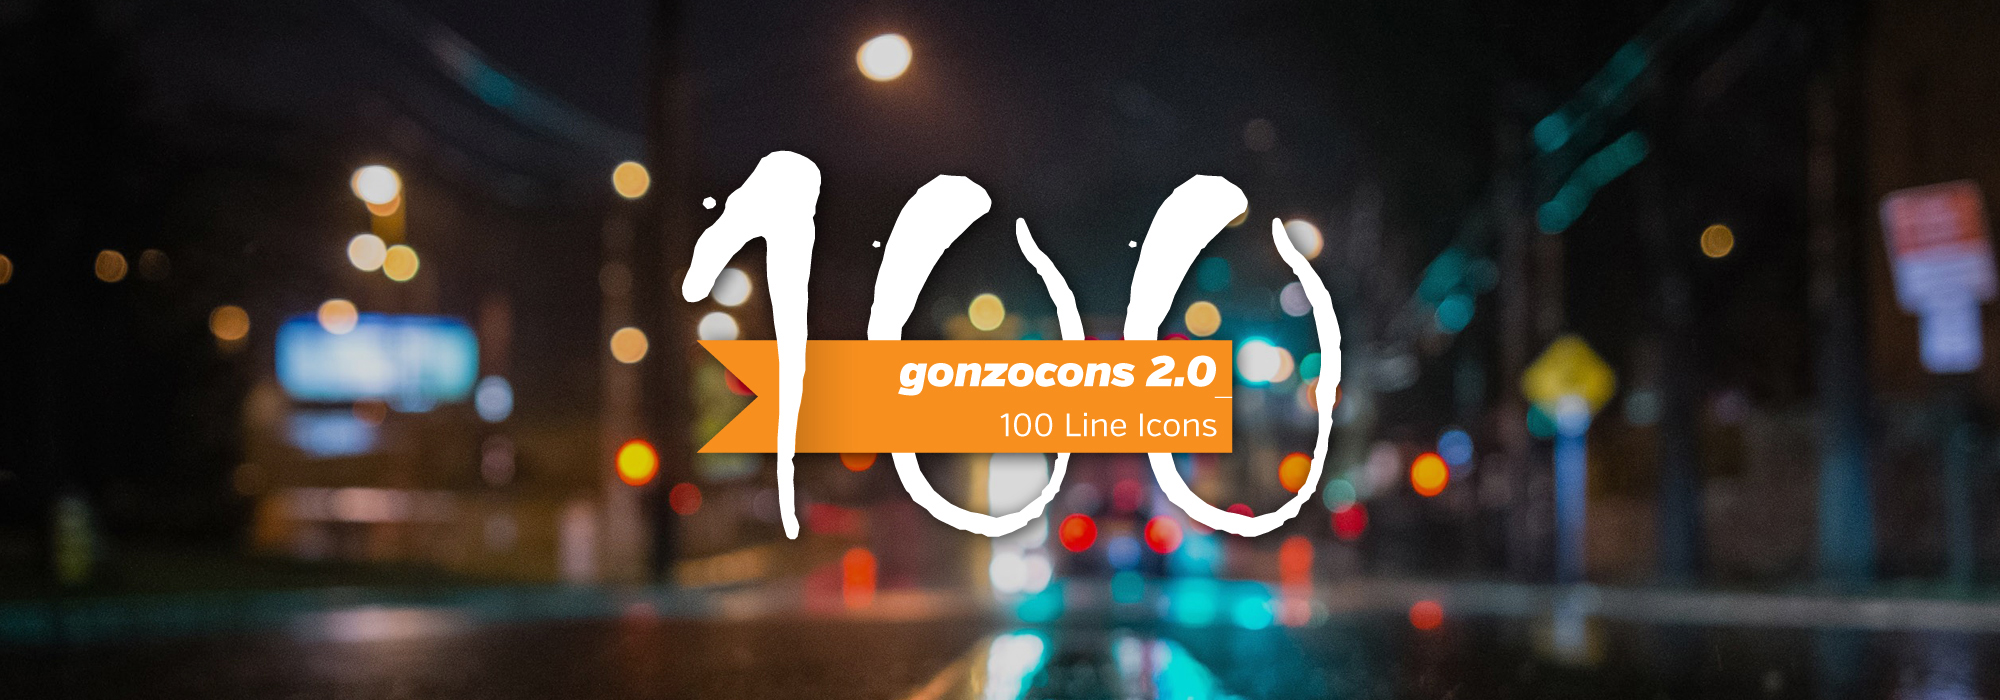 Webフォントとして使えるアイコンフォント100個セット「gonzocons 2.0」